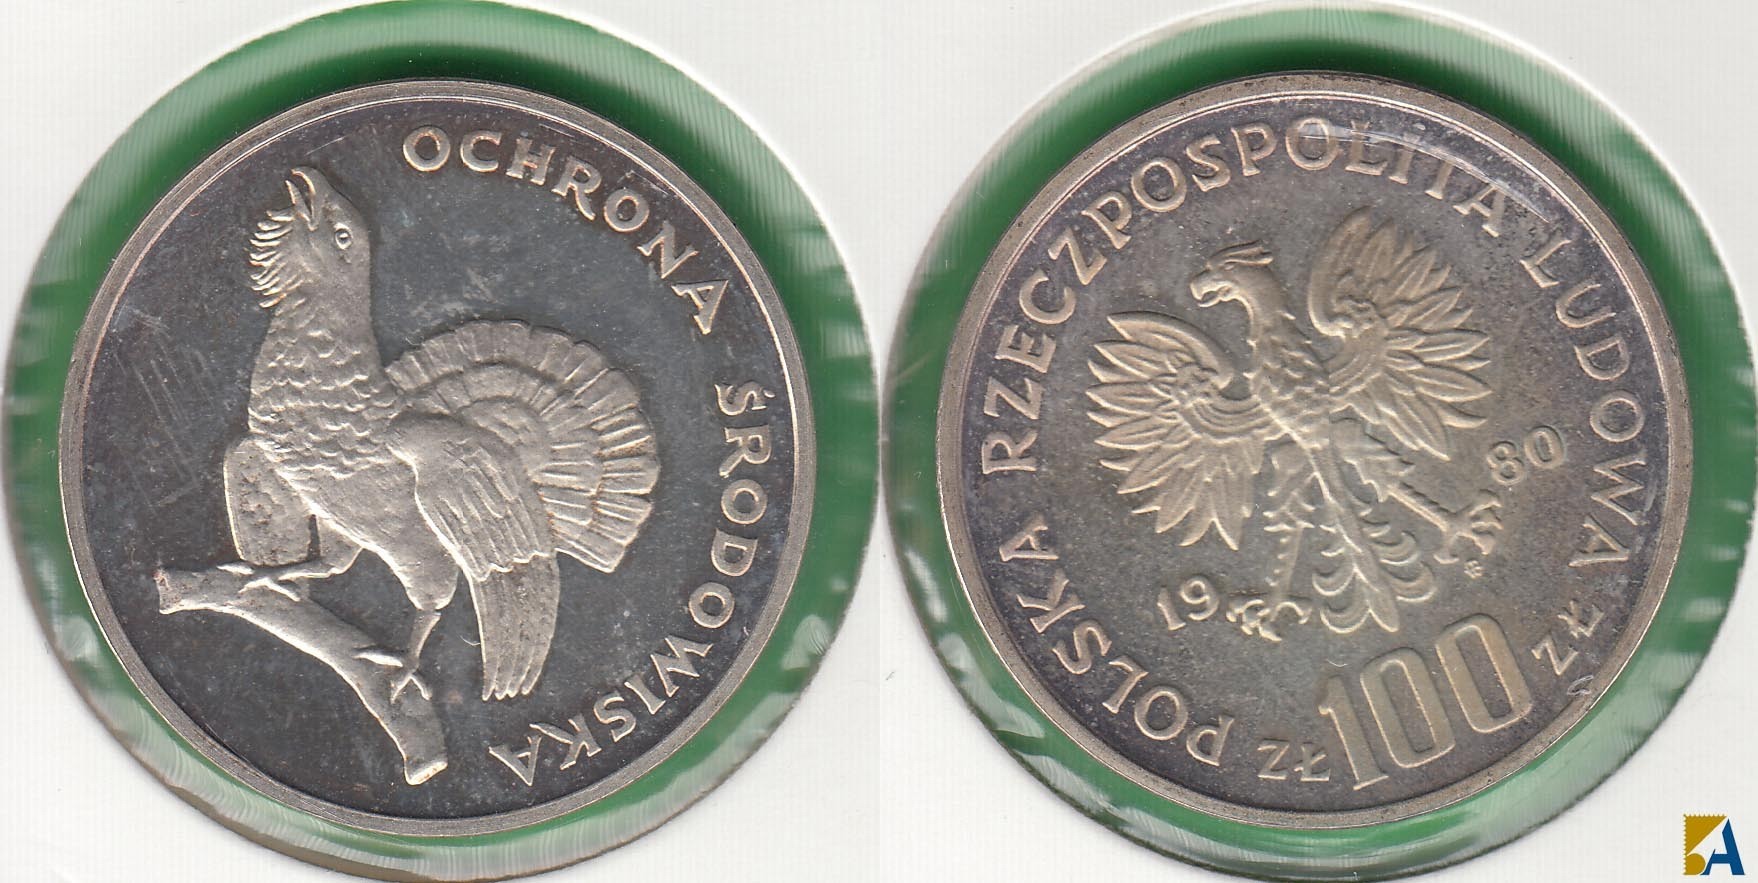 POLONIA - POLSKA. 100 ZLOTYCH DE 1980. PLATA 0.625. (2)